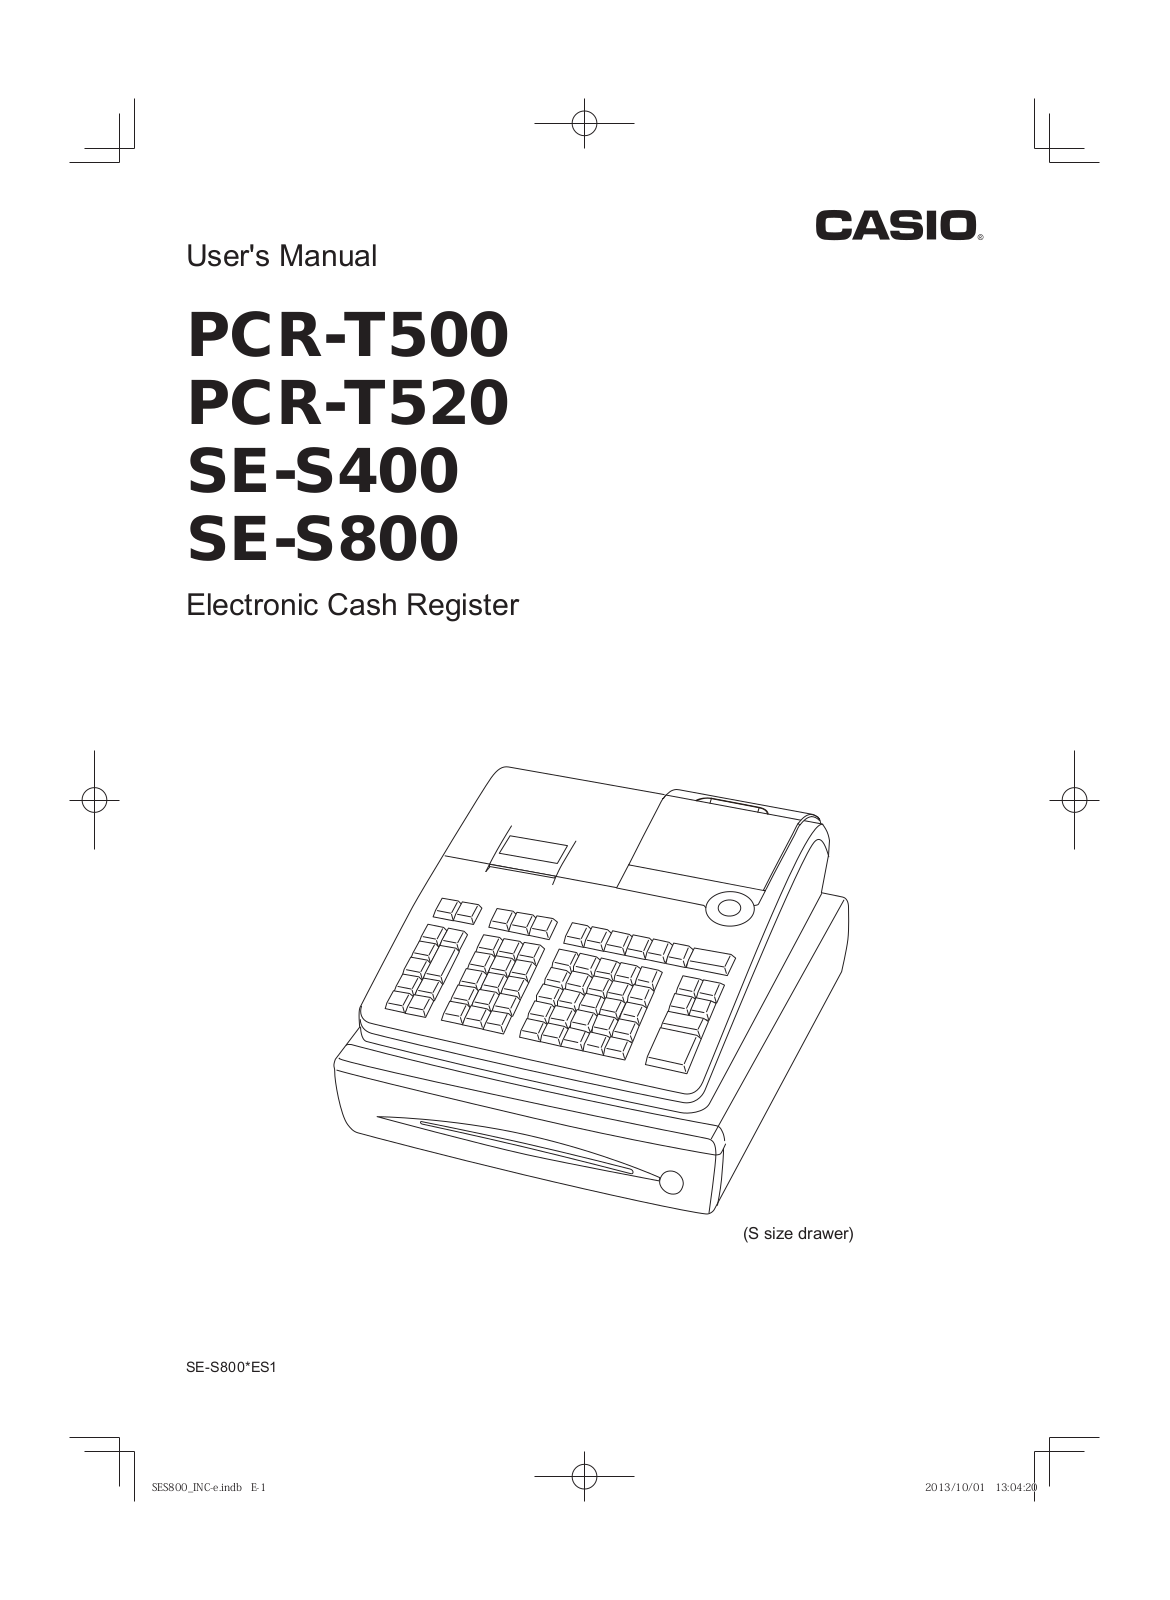 Casio PCR-T520, PCR-T500, SE-S800, SE-S400 User Manual